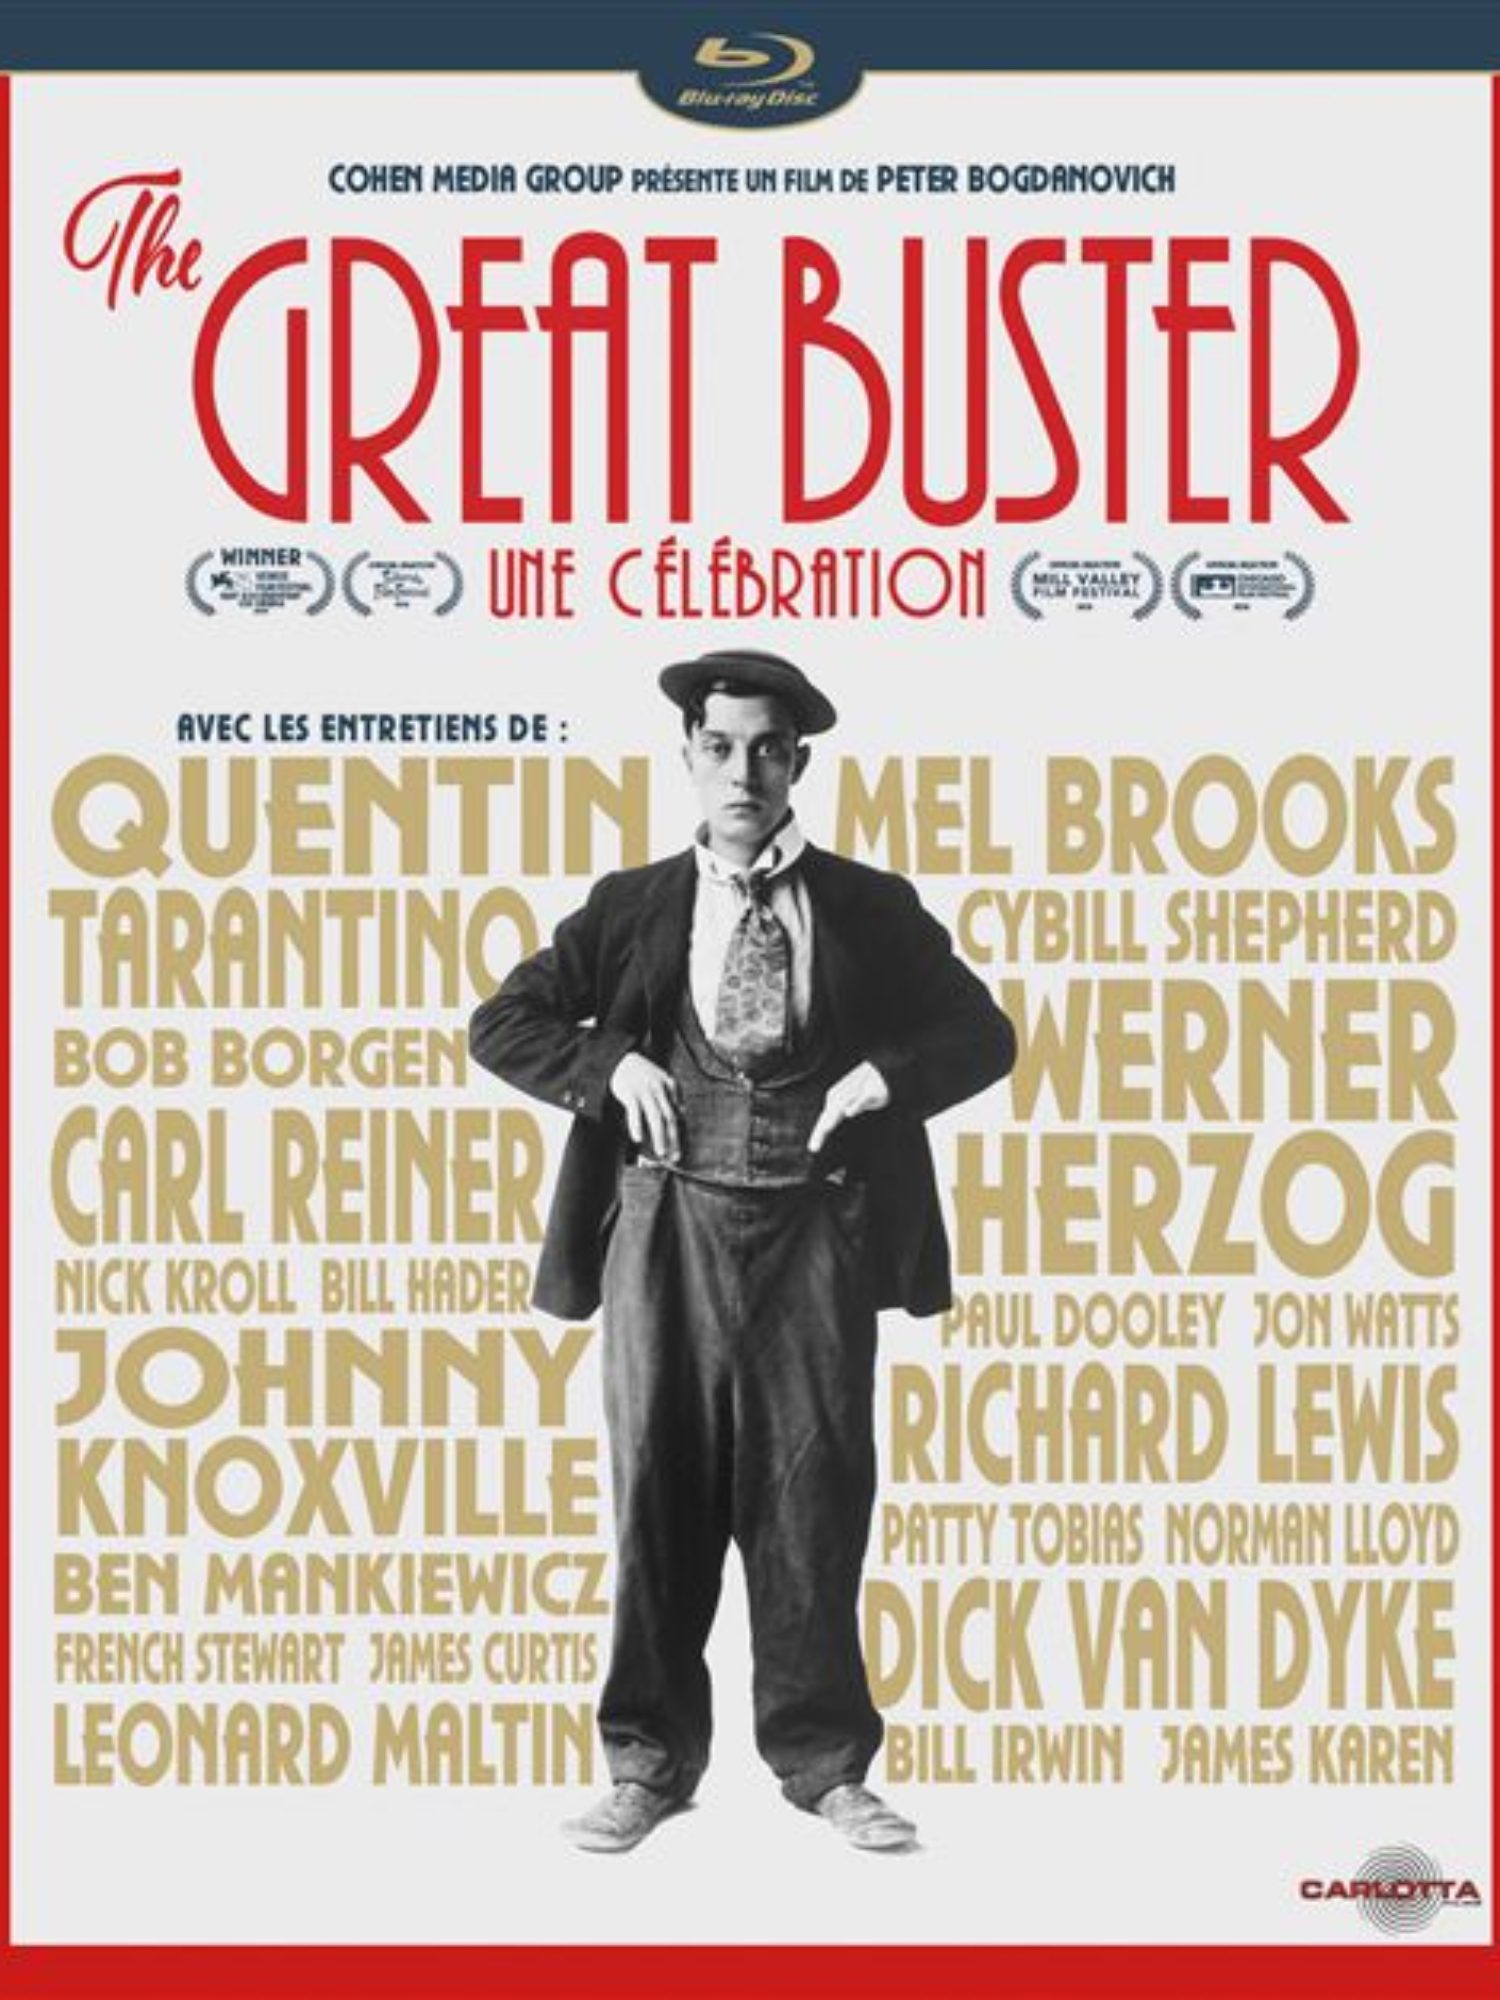 The Great Buster: Une célébration